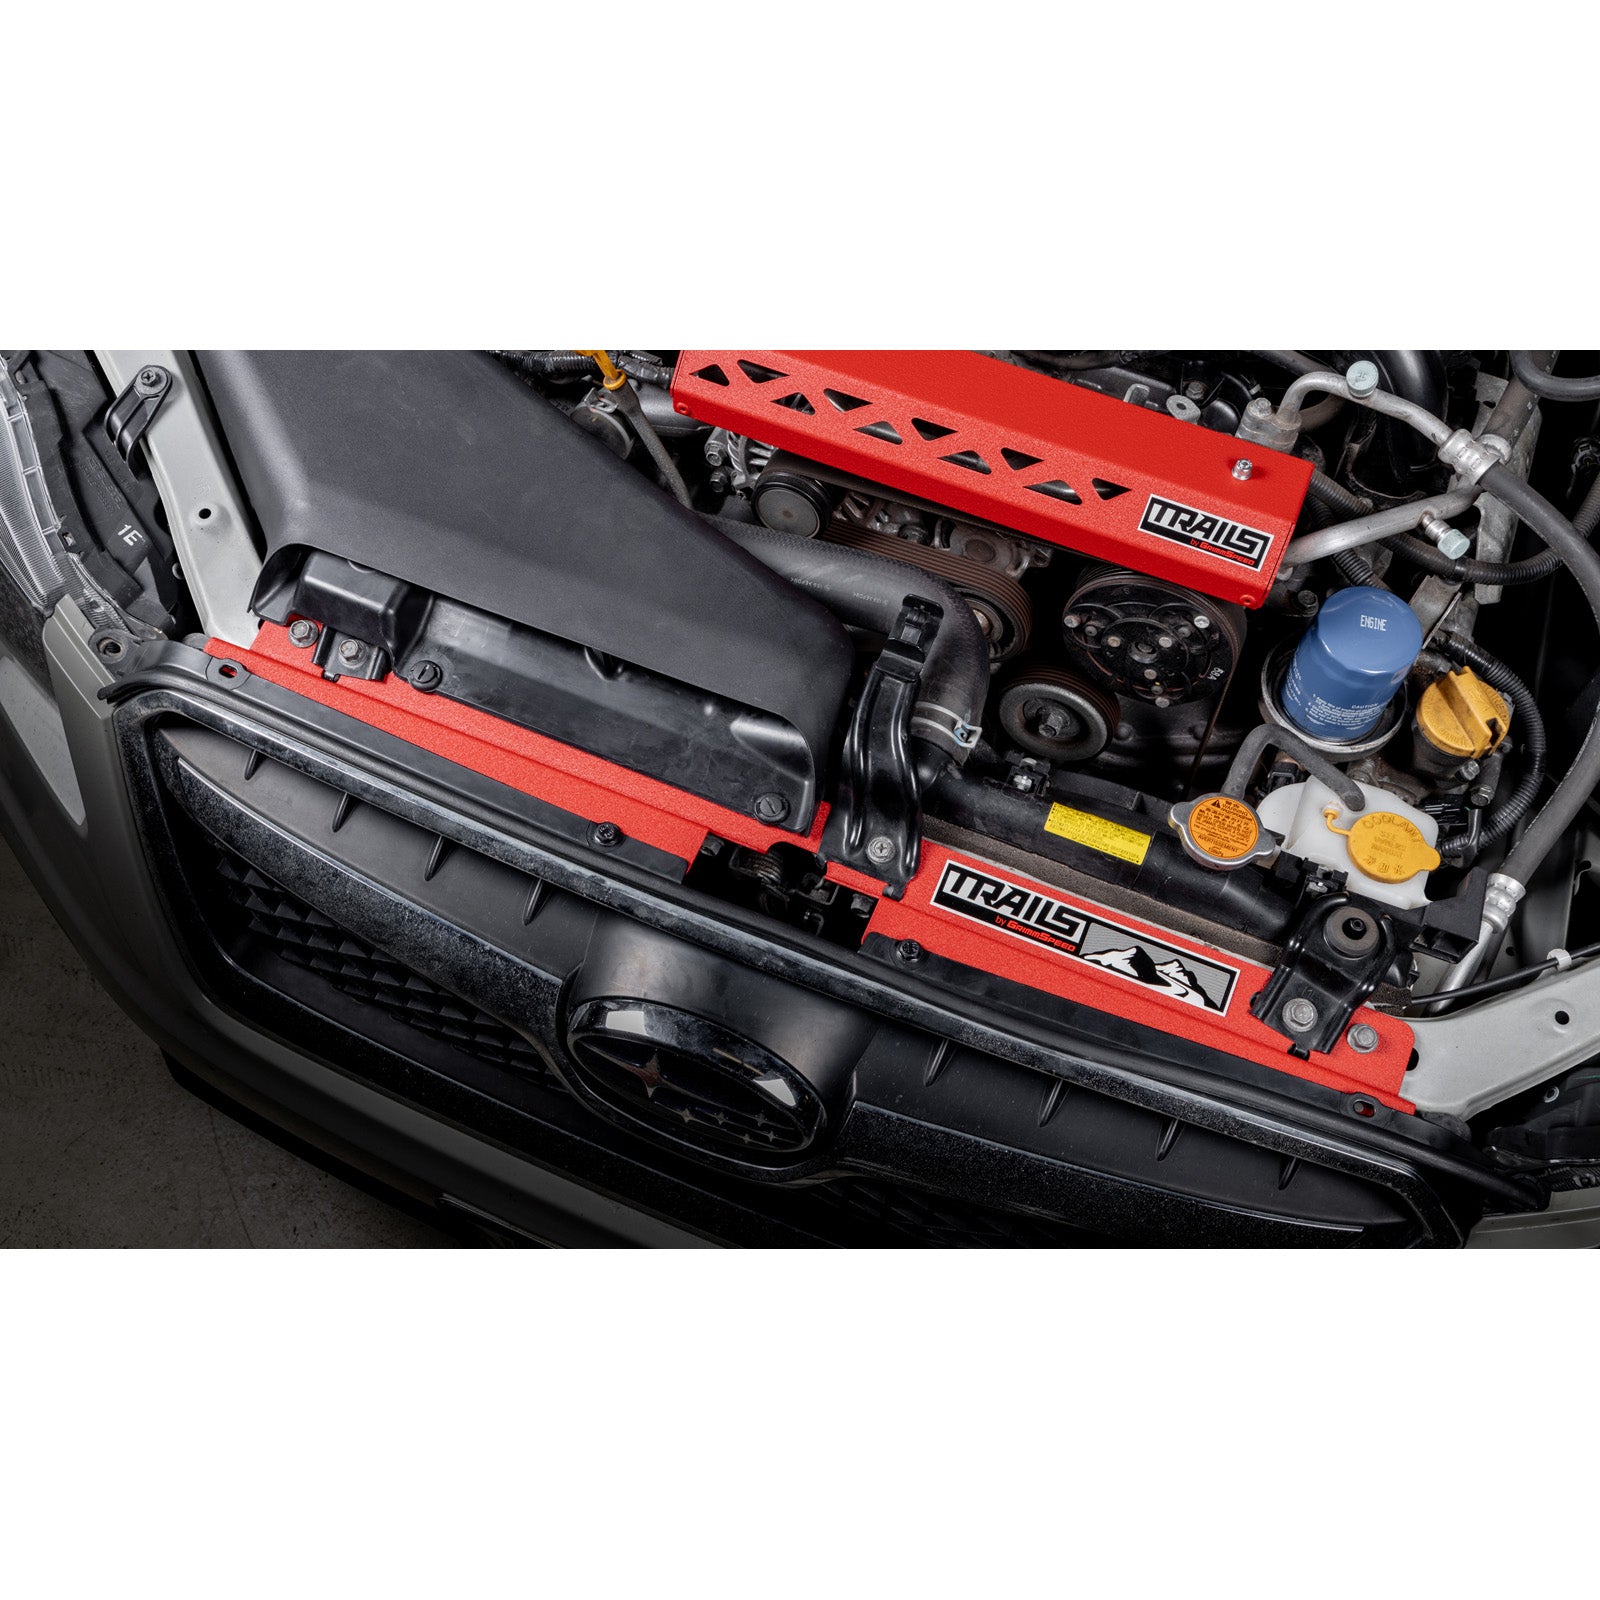 TRAILS by GrimmSpeed Radiator Shroud - Red - 2013-17 Subaru Crosstrek - 0